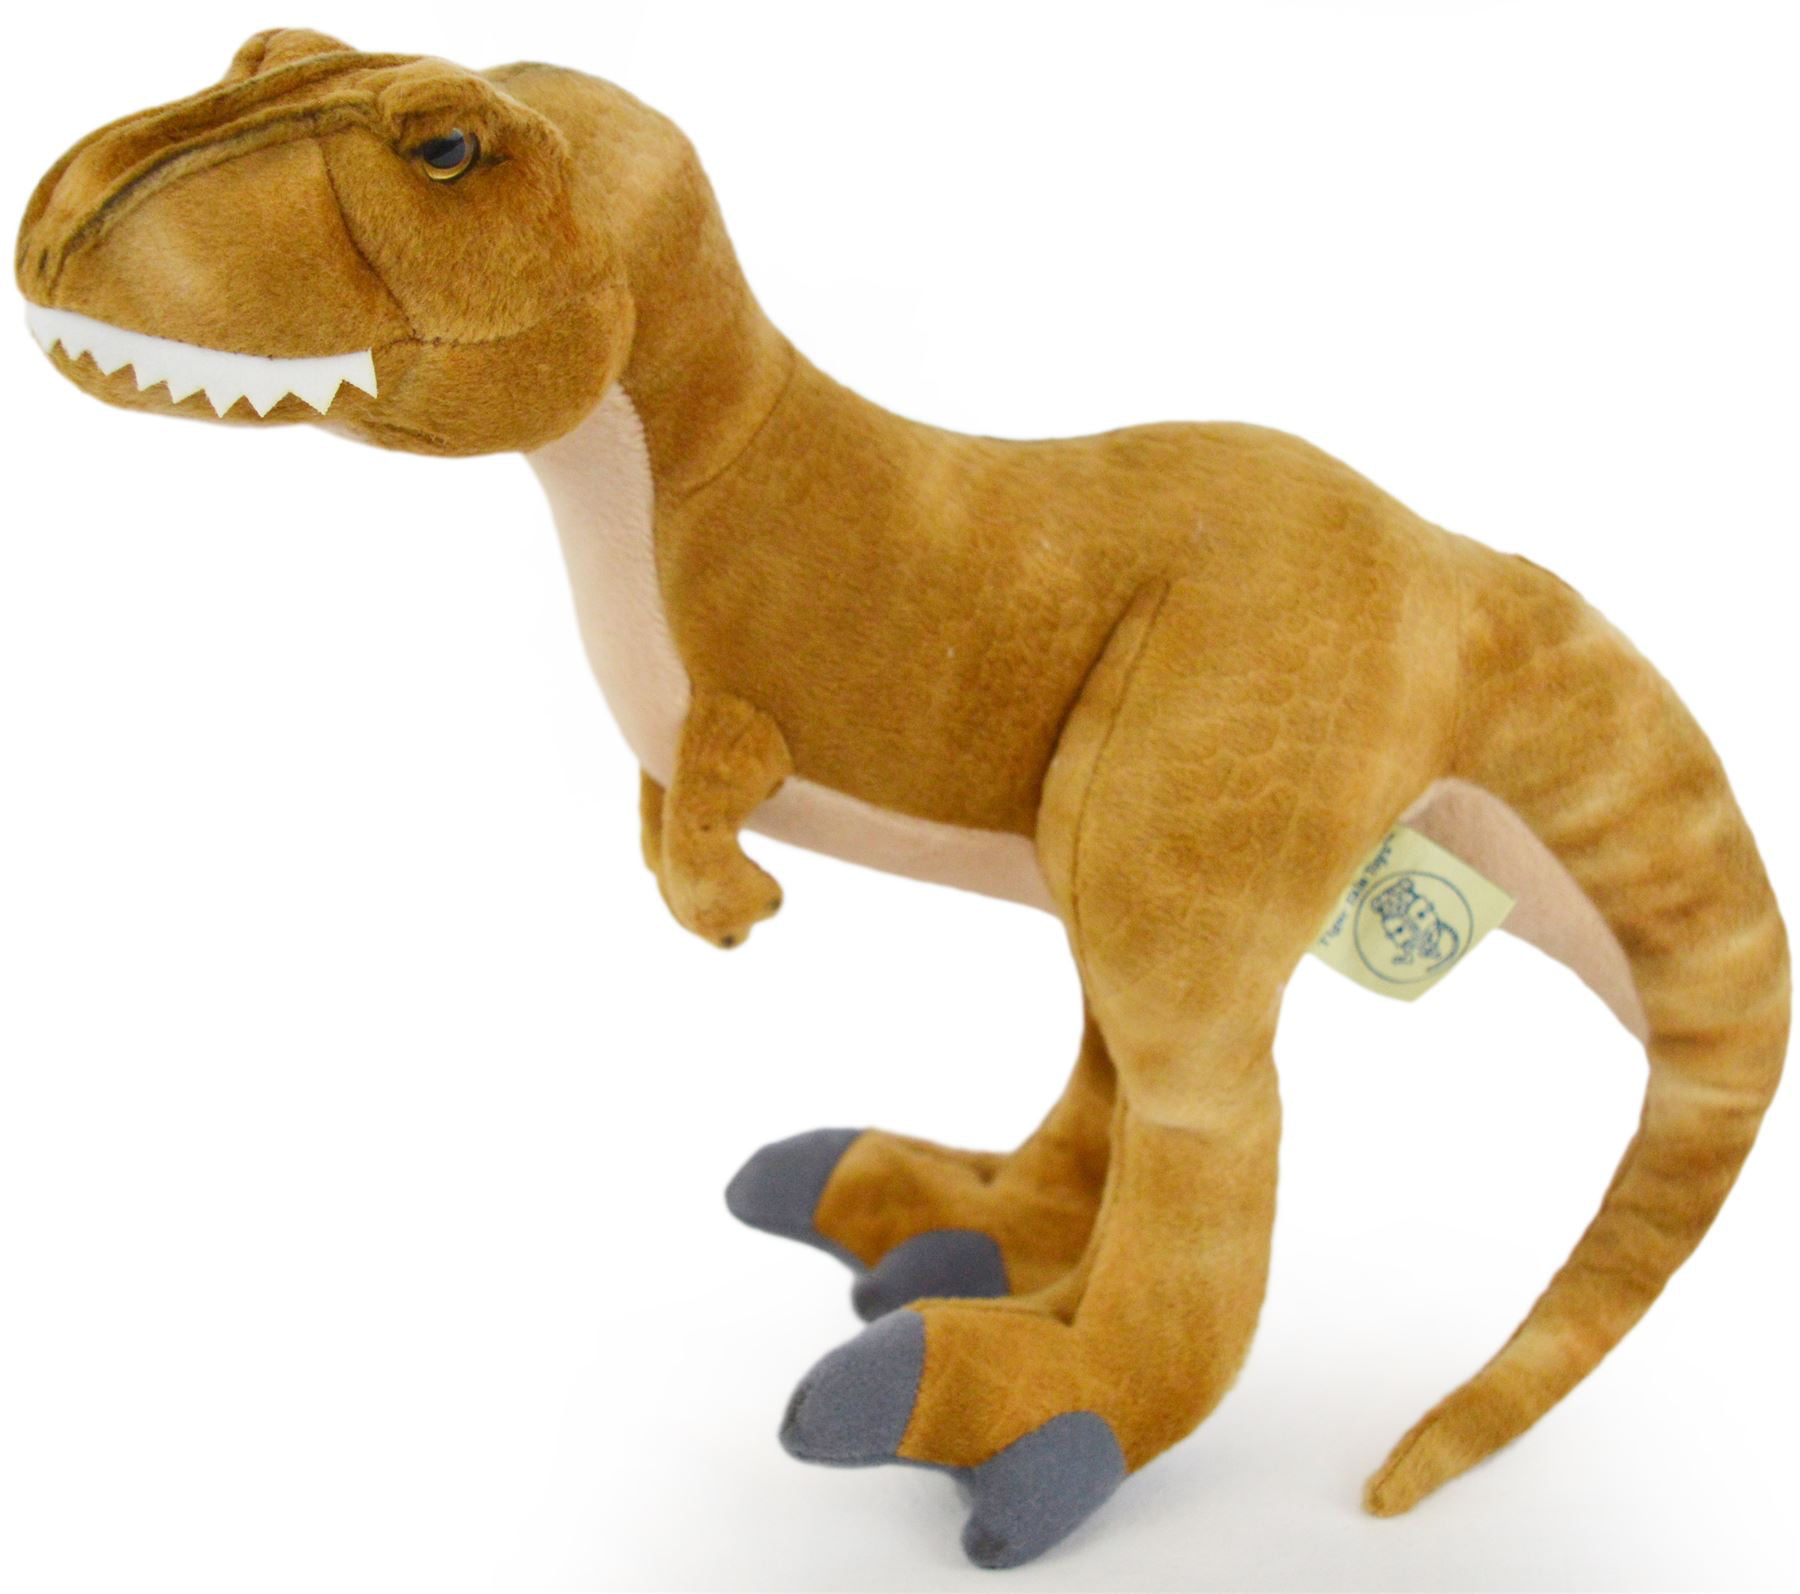 dinosaur stuffed animal large